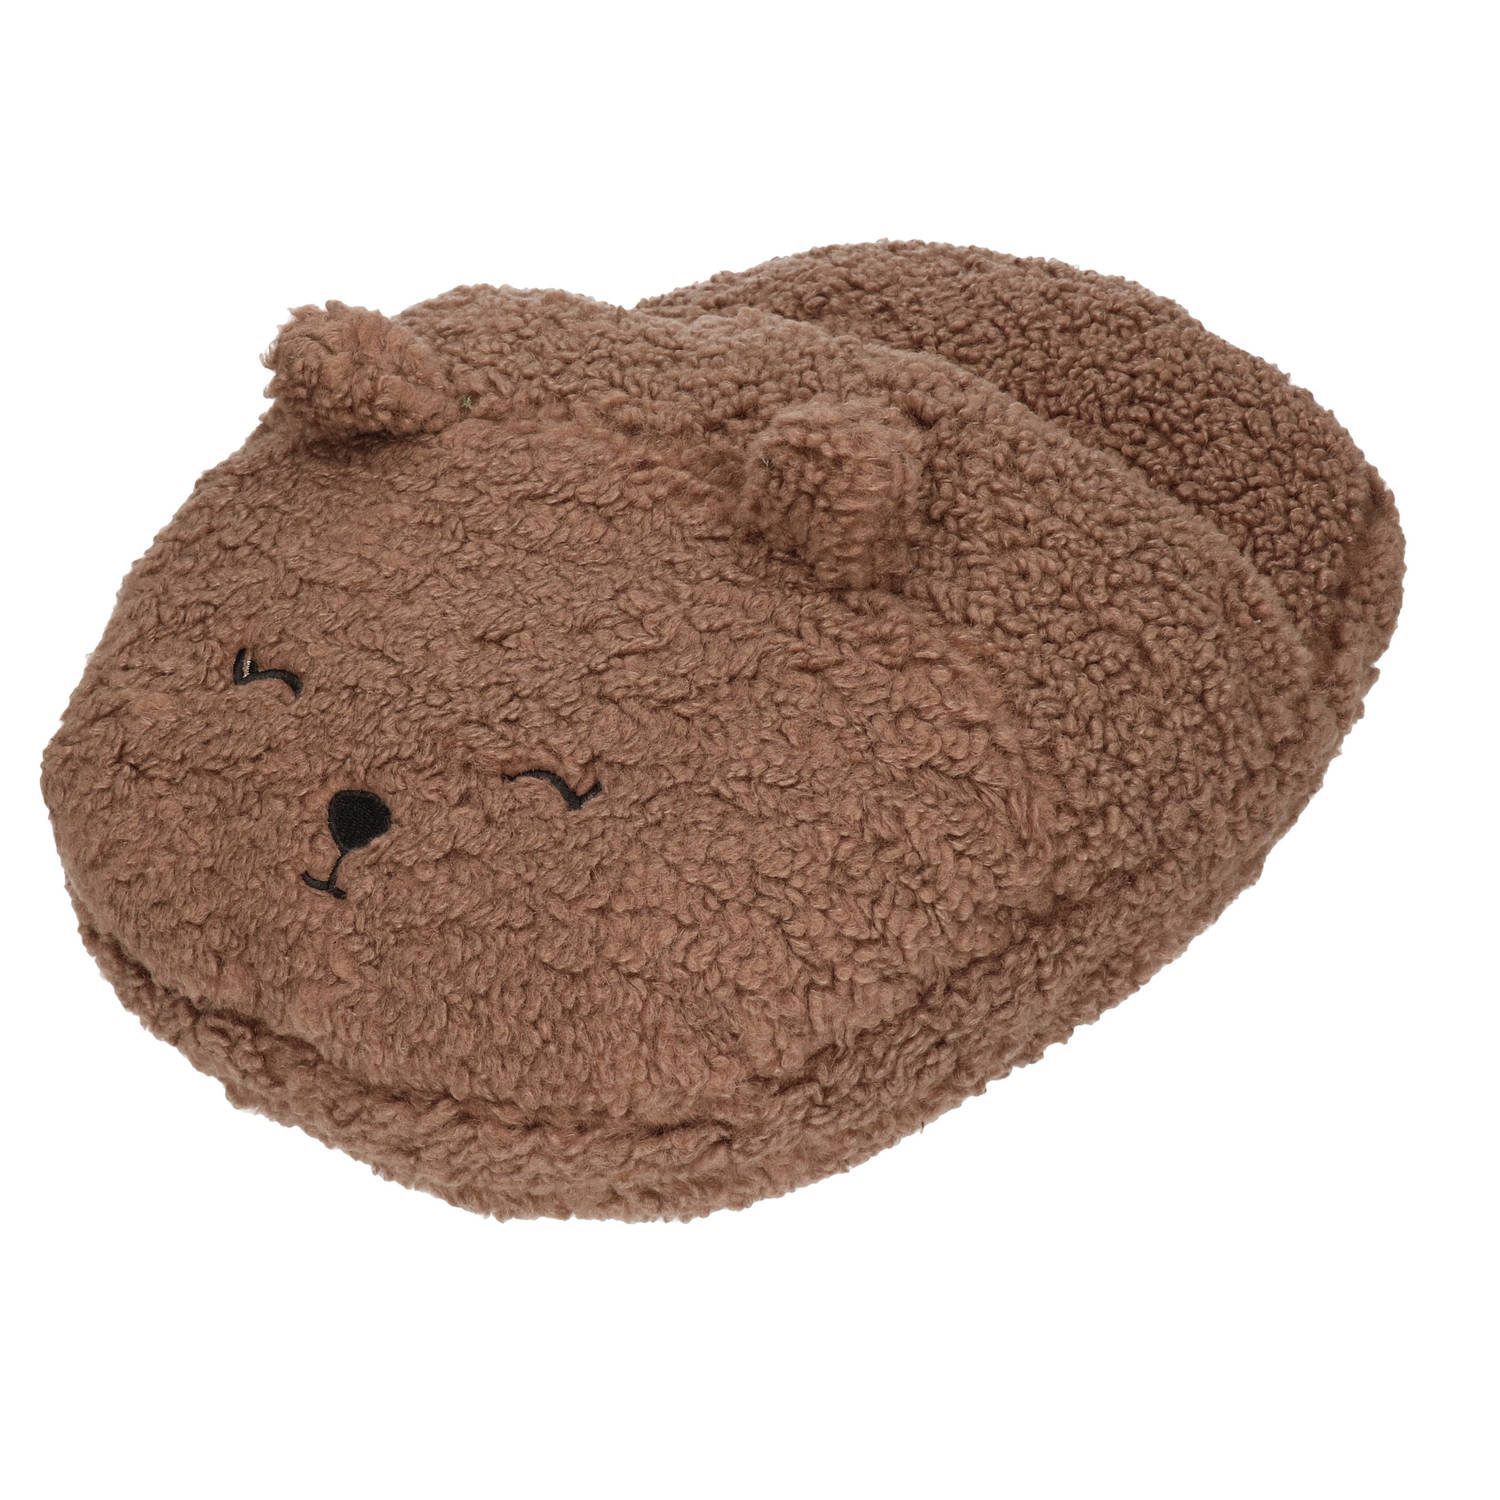 Kruis aan Regeren slogan Grote voetenwarmer pantoffel/slof beer chocolade bruin one size 30 x 27 cm  - Sloffen - volwassenen | Blokker